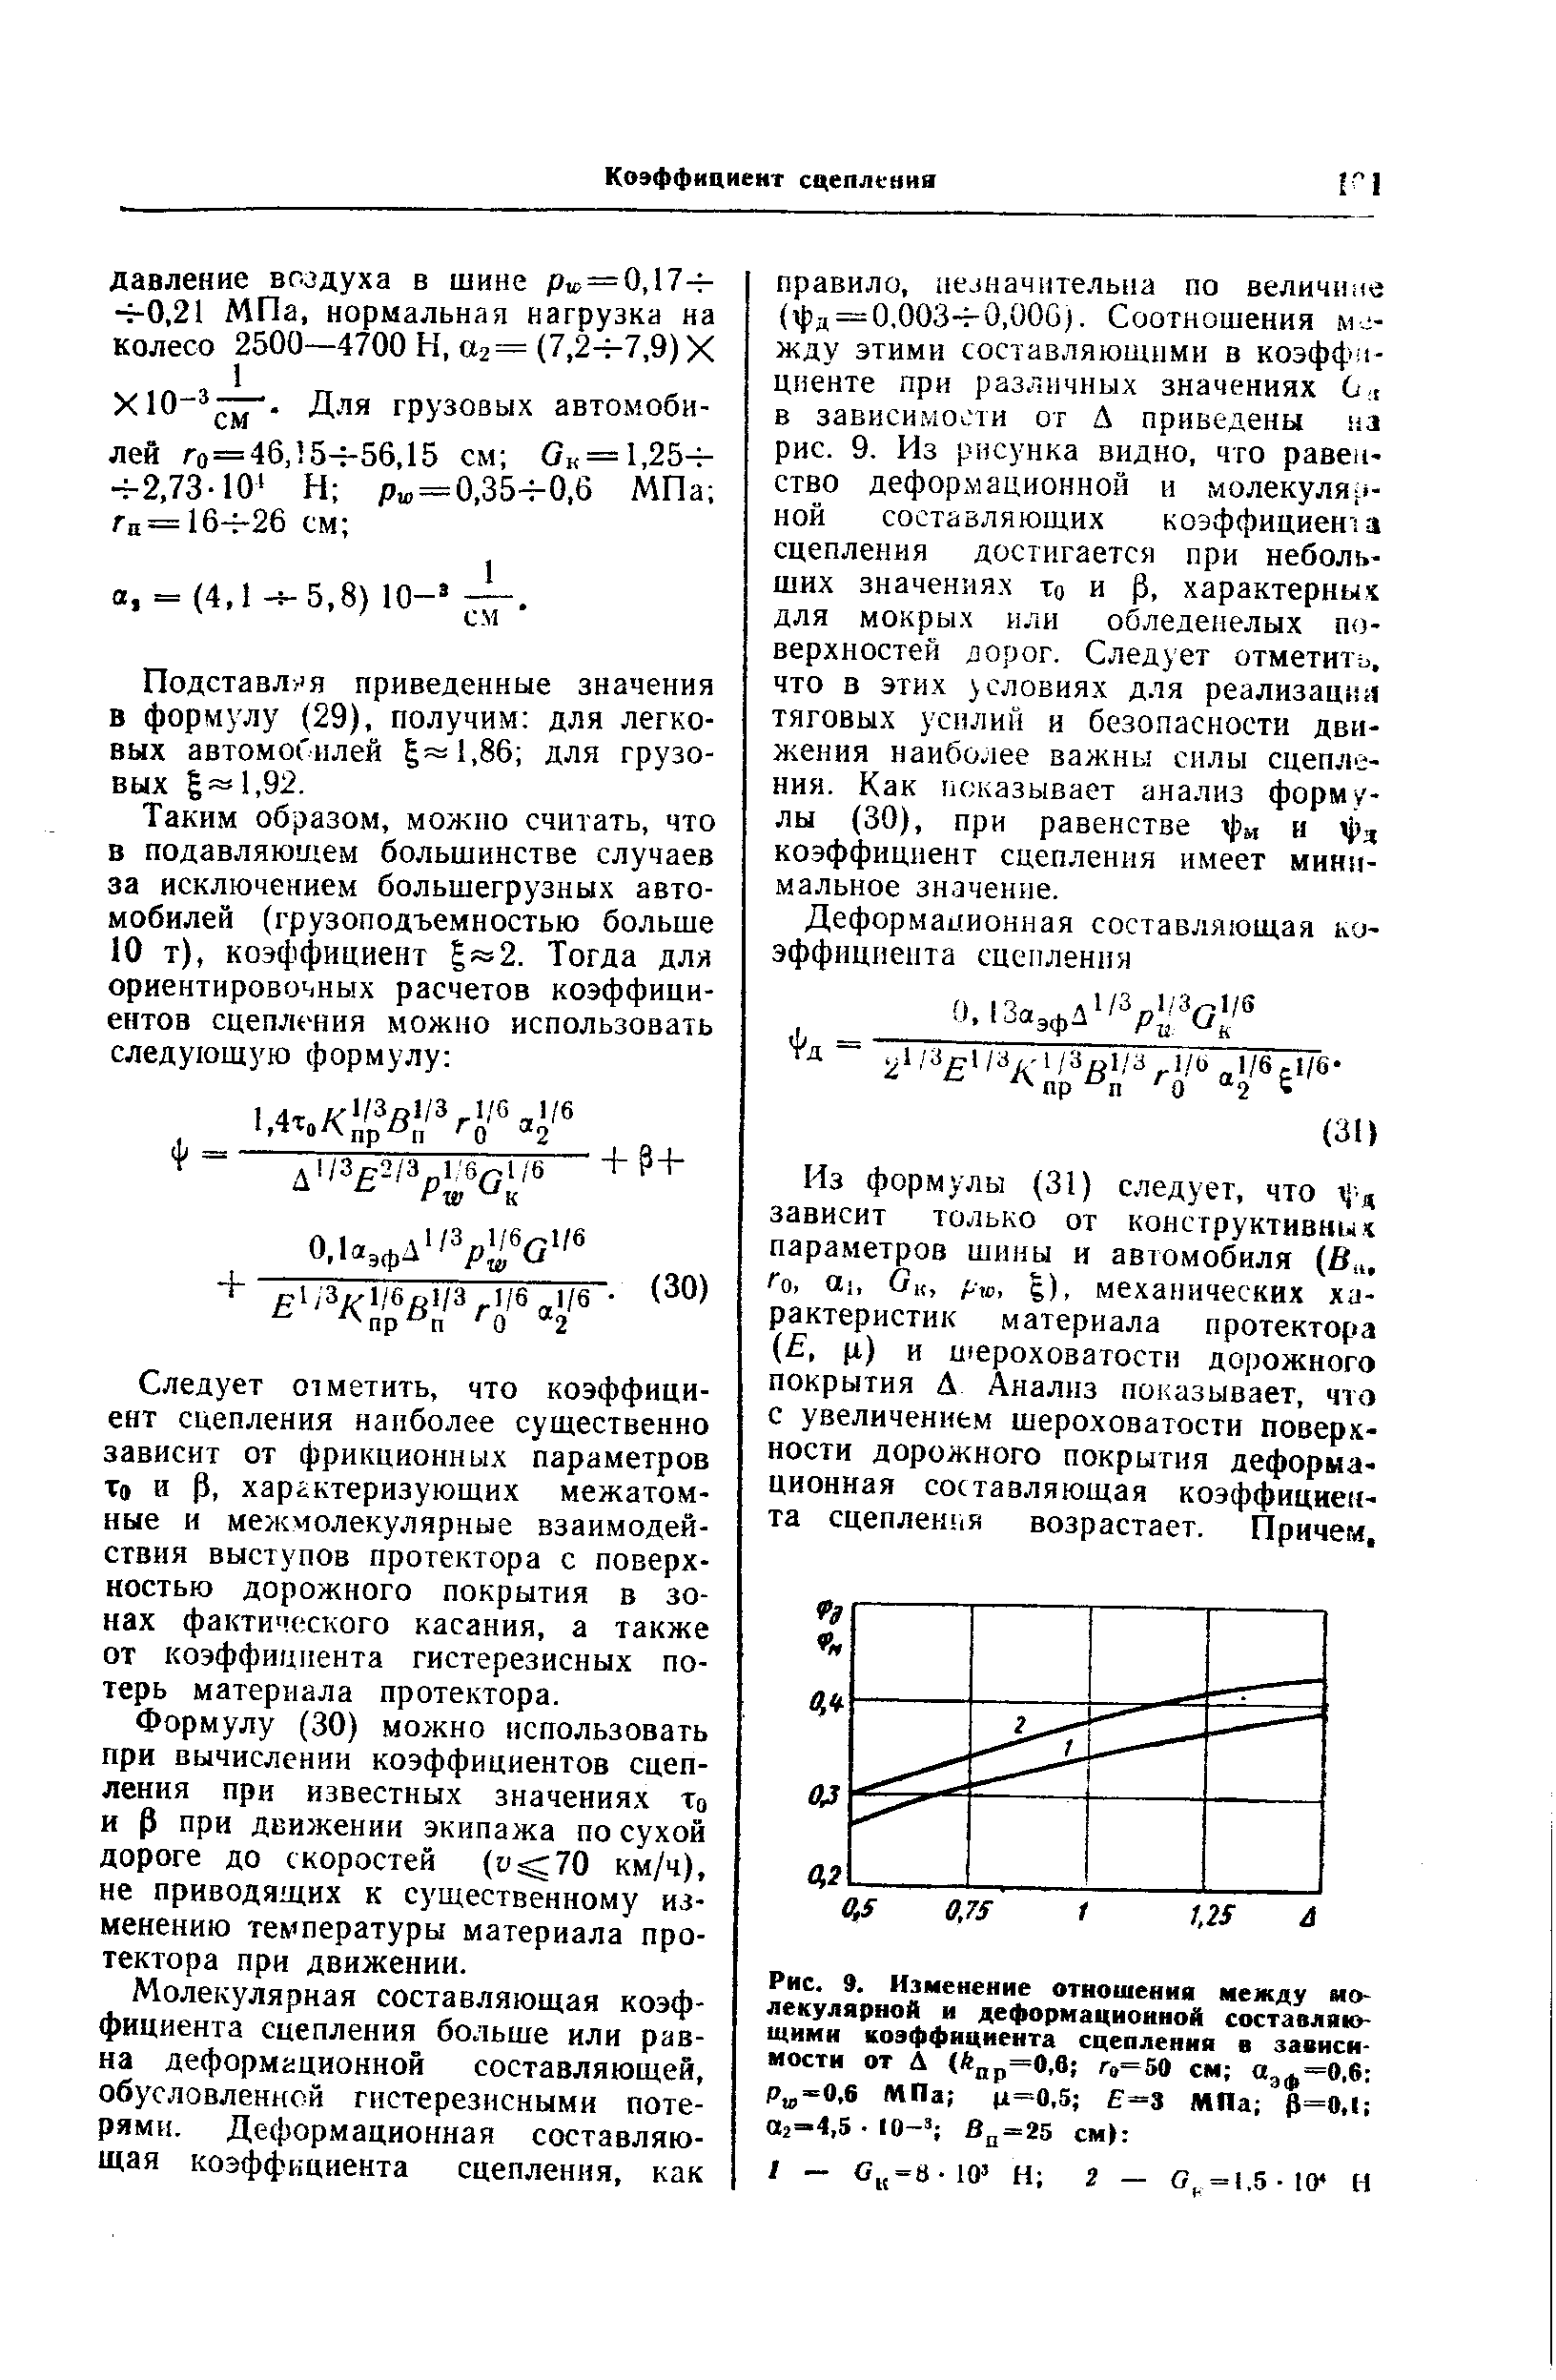 Рис. 9. Изменение отношения между молекулярной и деформационной составляющими <a href="/info/126">коэффициента сцепления</a> в зависимости от Д (А р=0,в г,=50 см Озф-О.б Р -0.6 МПа (1=0.5 3 МПа Р=0,1 02=4,5 10- Вп-25 см 
